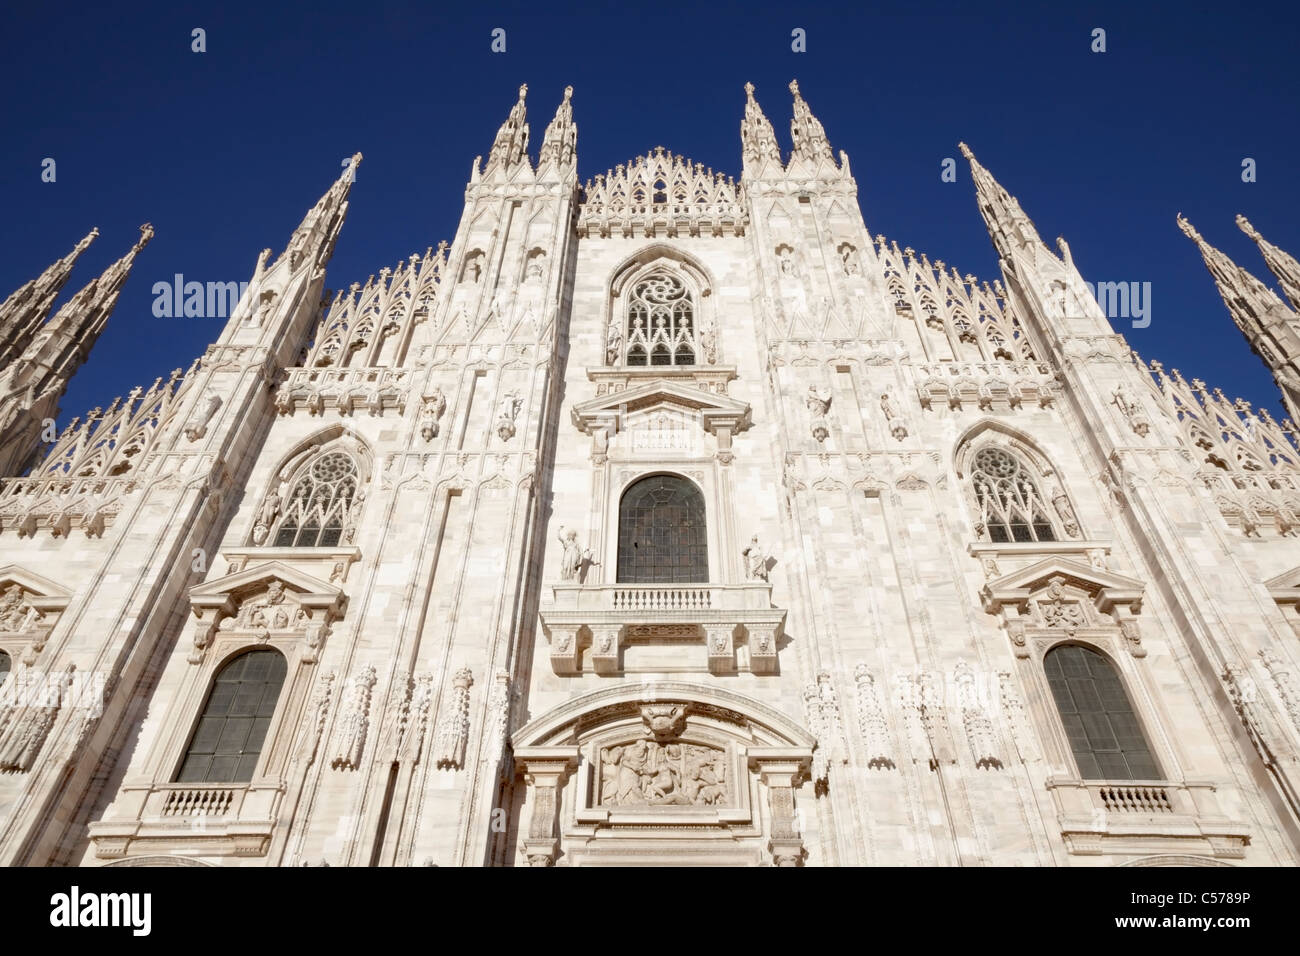 Duomo de Milan, ciel bleu Banque D'Images